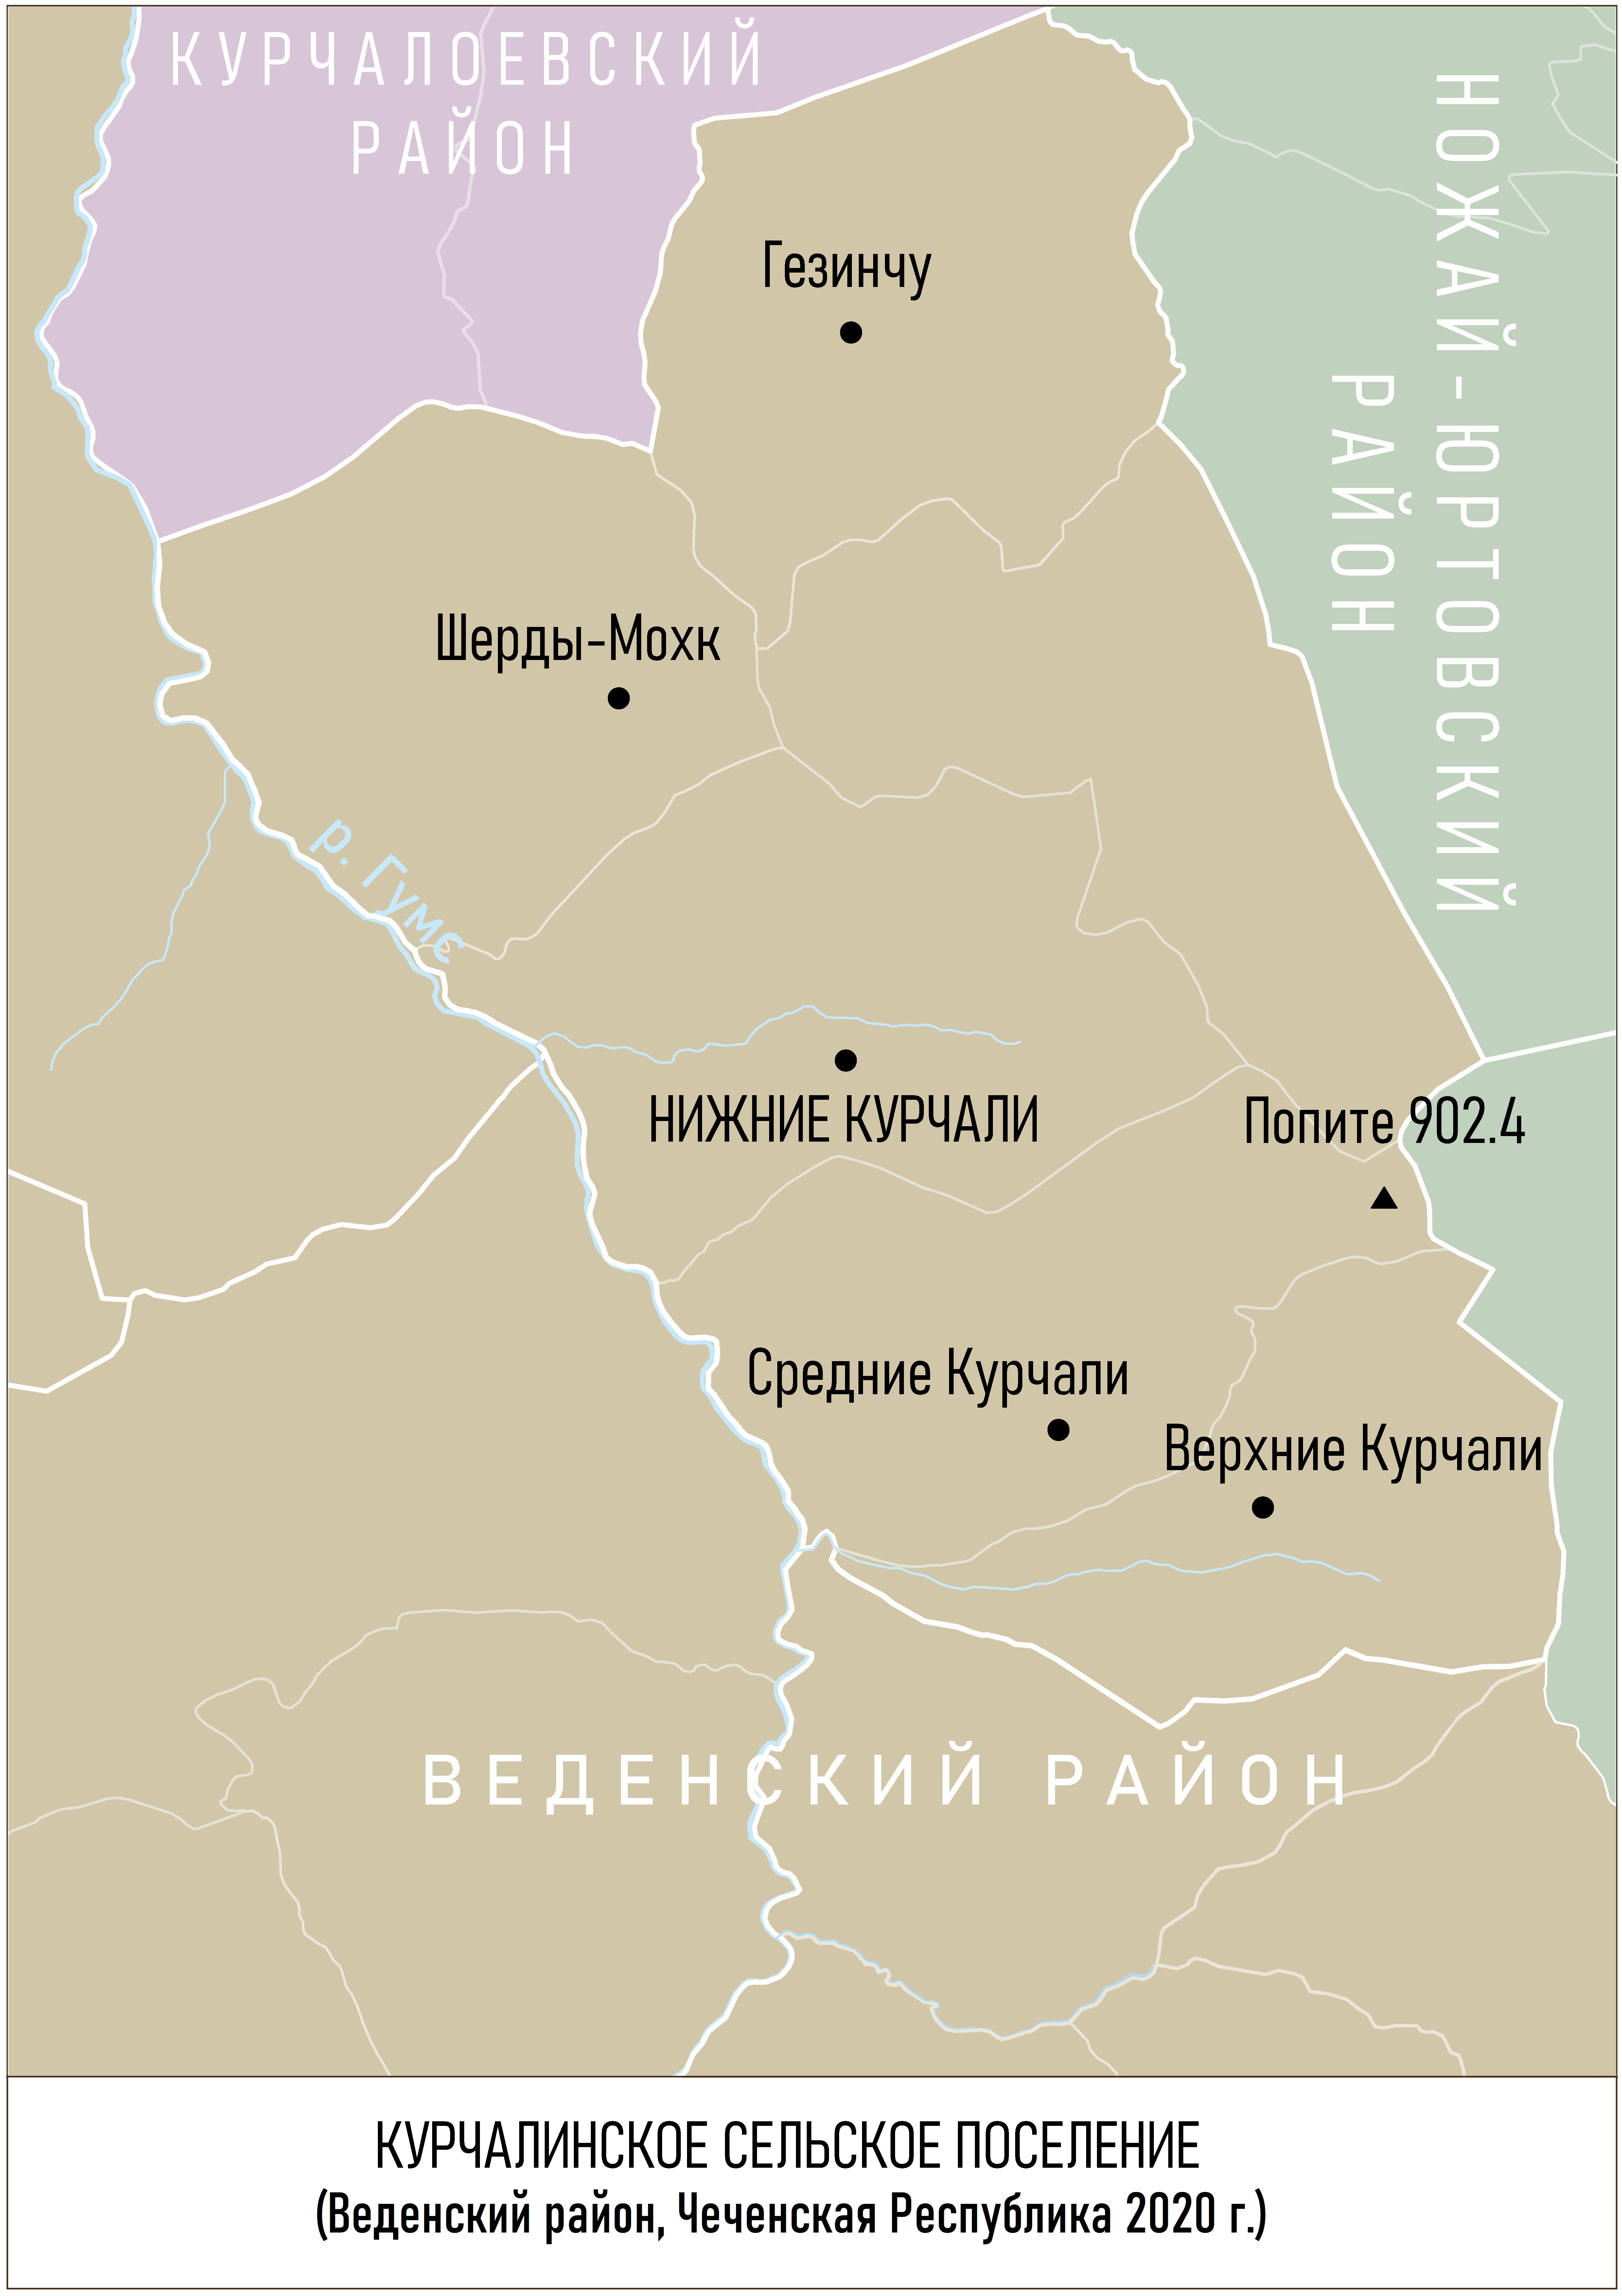 File:Курчалинское сельское поселение (2020). Веденский район.jpg -Wikimedia Commons